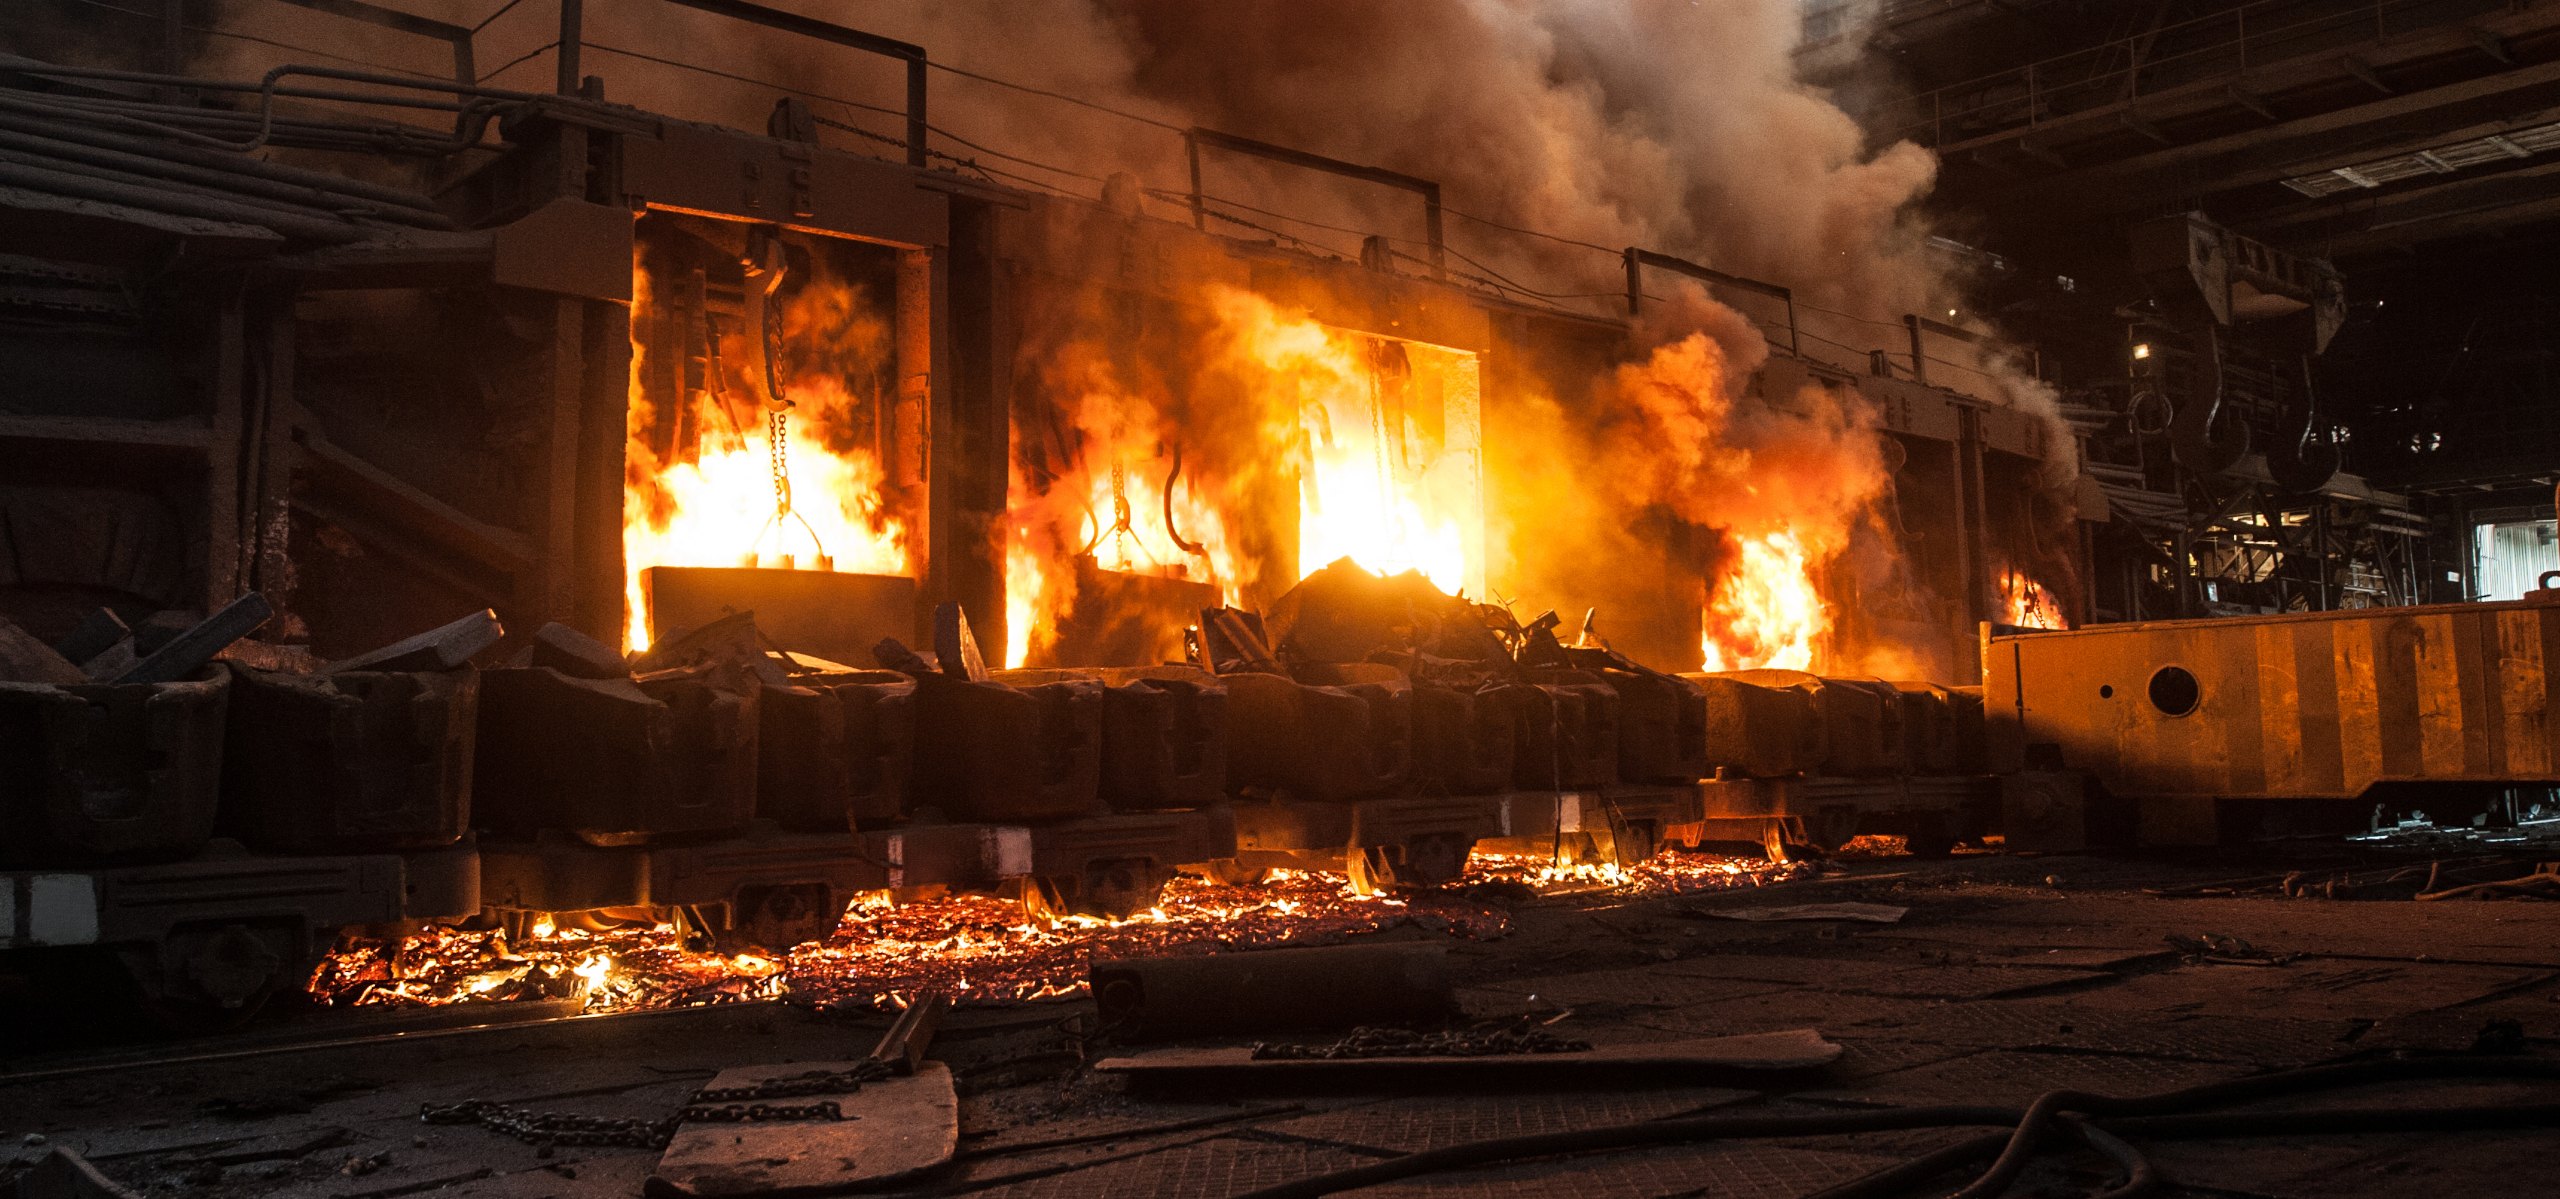 Massachusetts : atténuation et restauration des incendies industriels